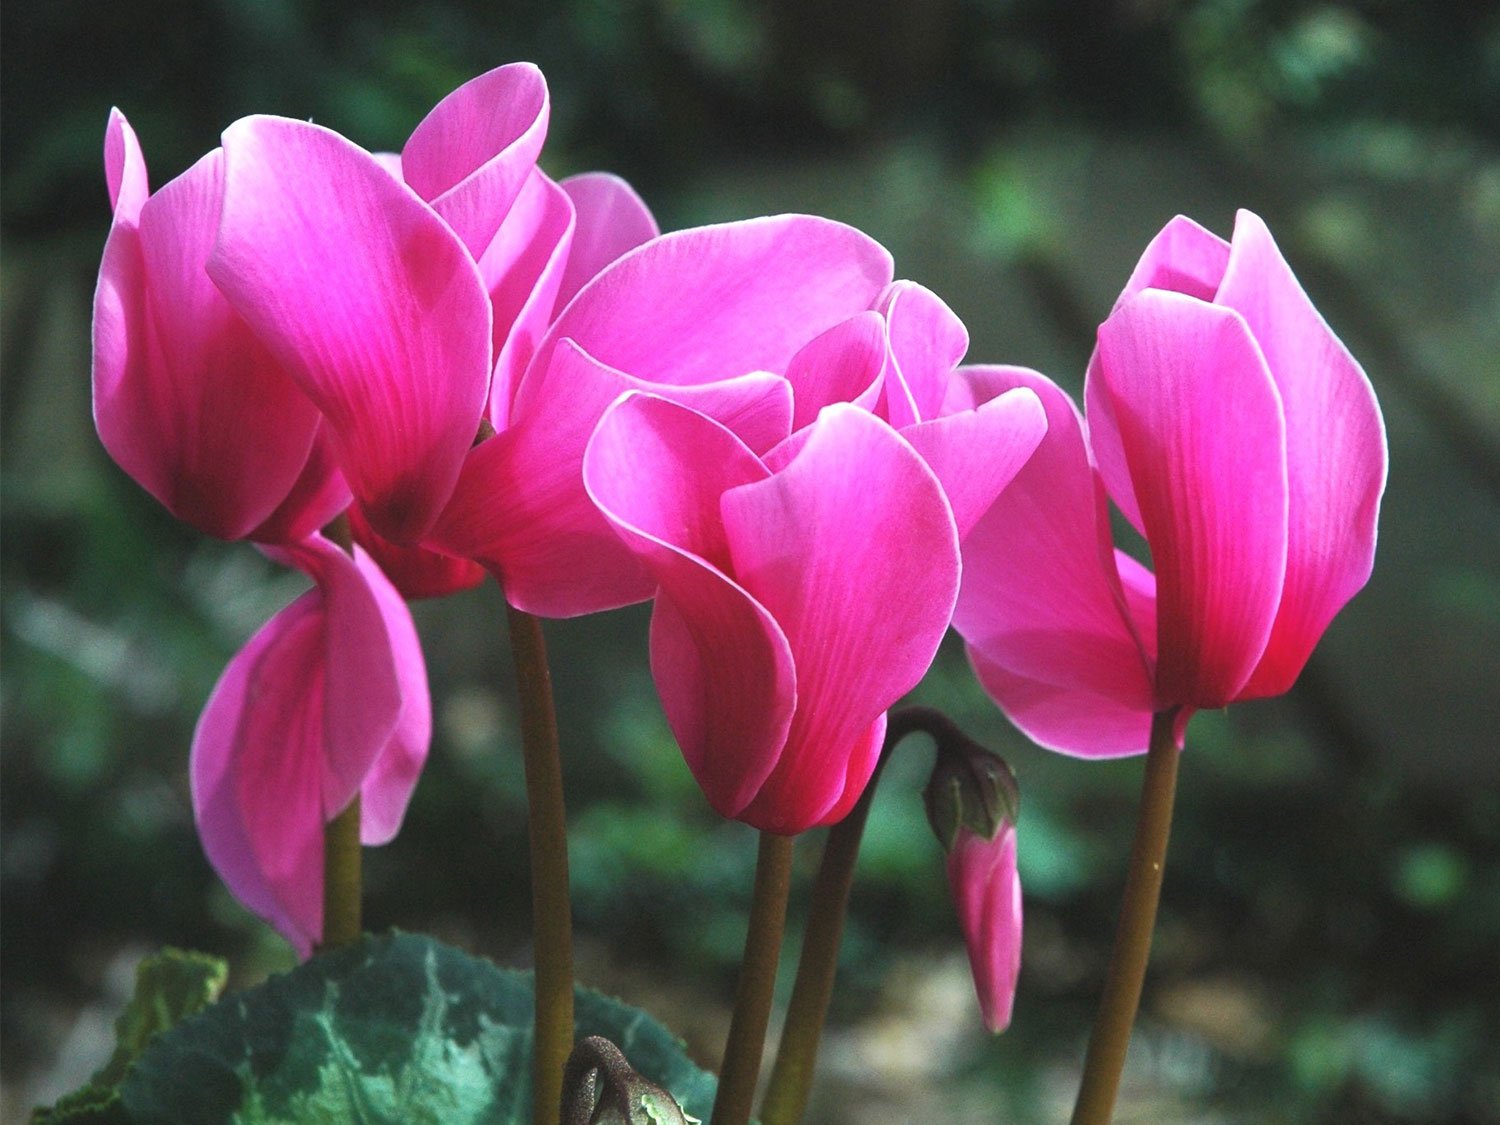 Cyclamen rose en fleur dans un jardin